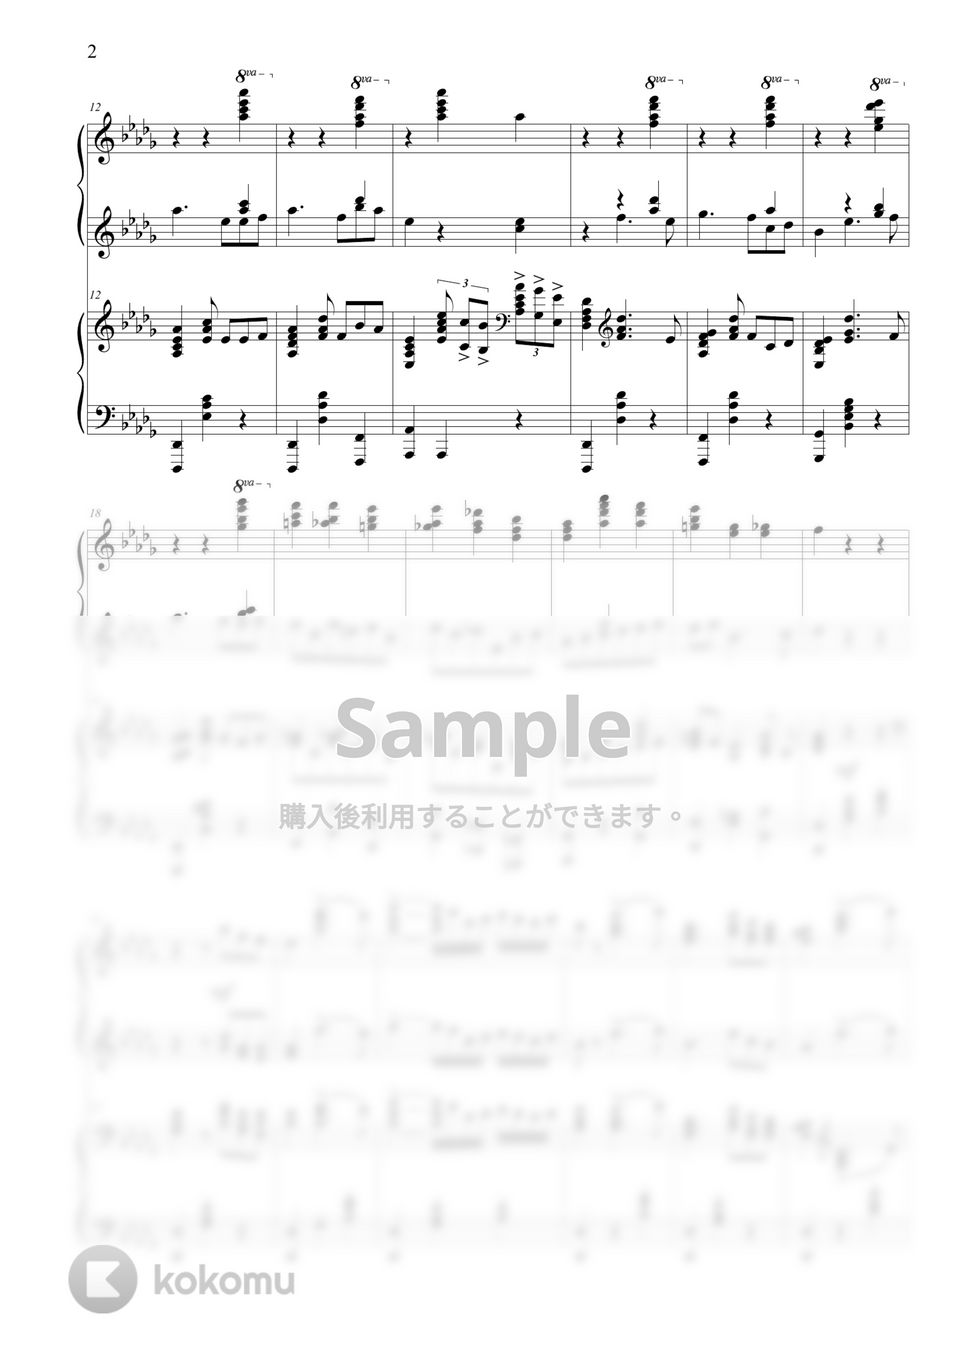 チャイコフスキー - Piano Concerto No.1 (4 hands) by THIS IS PIANO